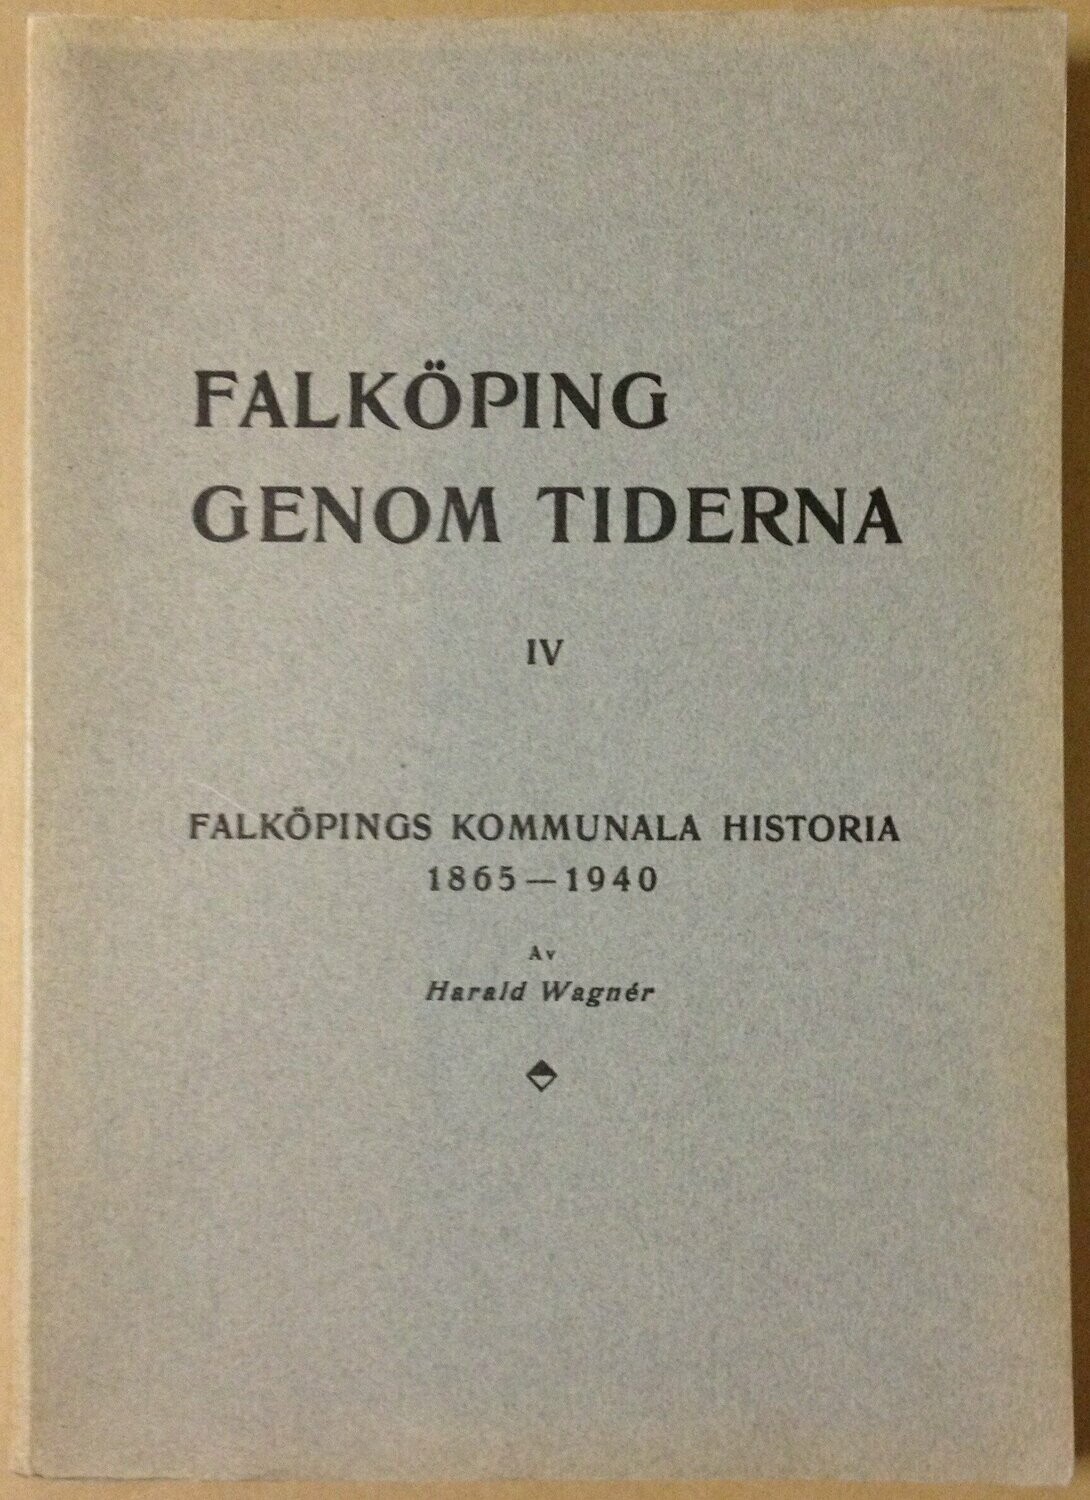 Falköping genom tiderna IV - Falköpings kommunala historia 1865-1940